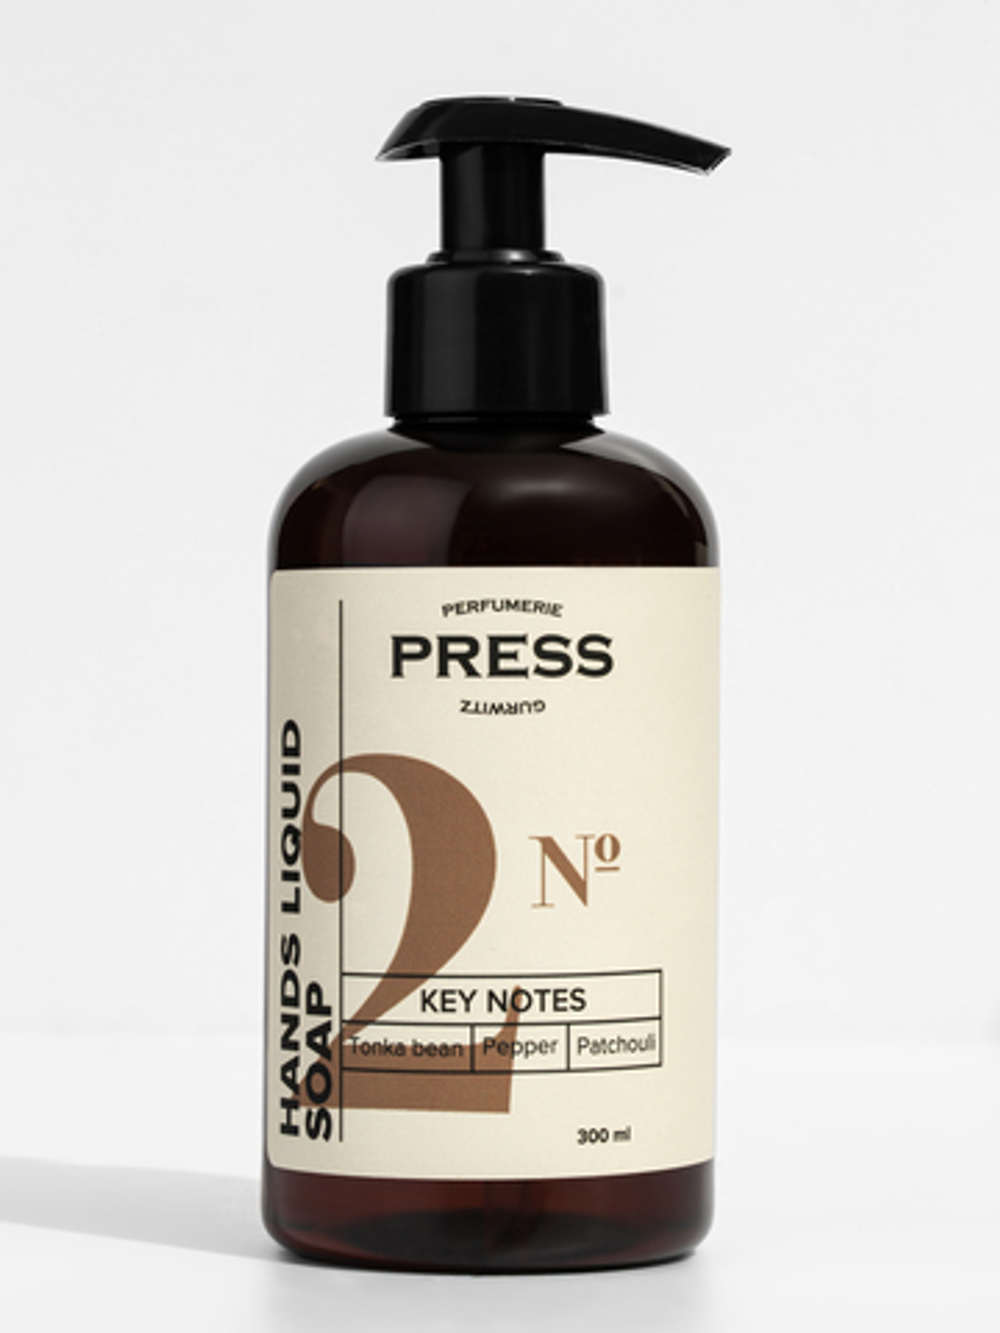 Жидкое мыло для рук Press Gurwitz Perfumerie №2 с нотами черного перца, бобов Тонка, пачули, 300 мл